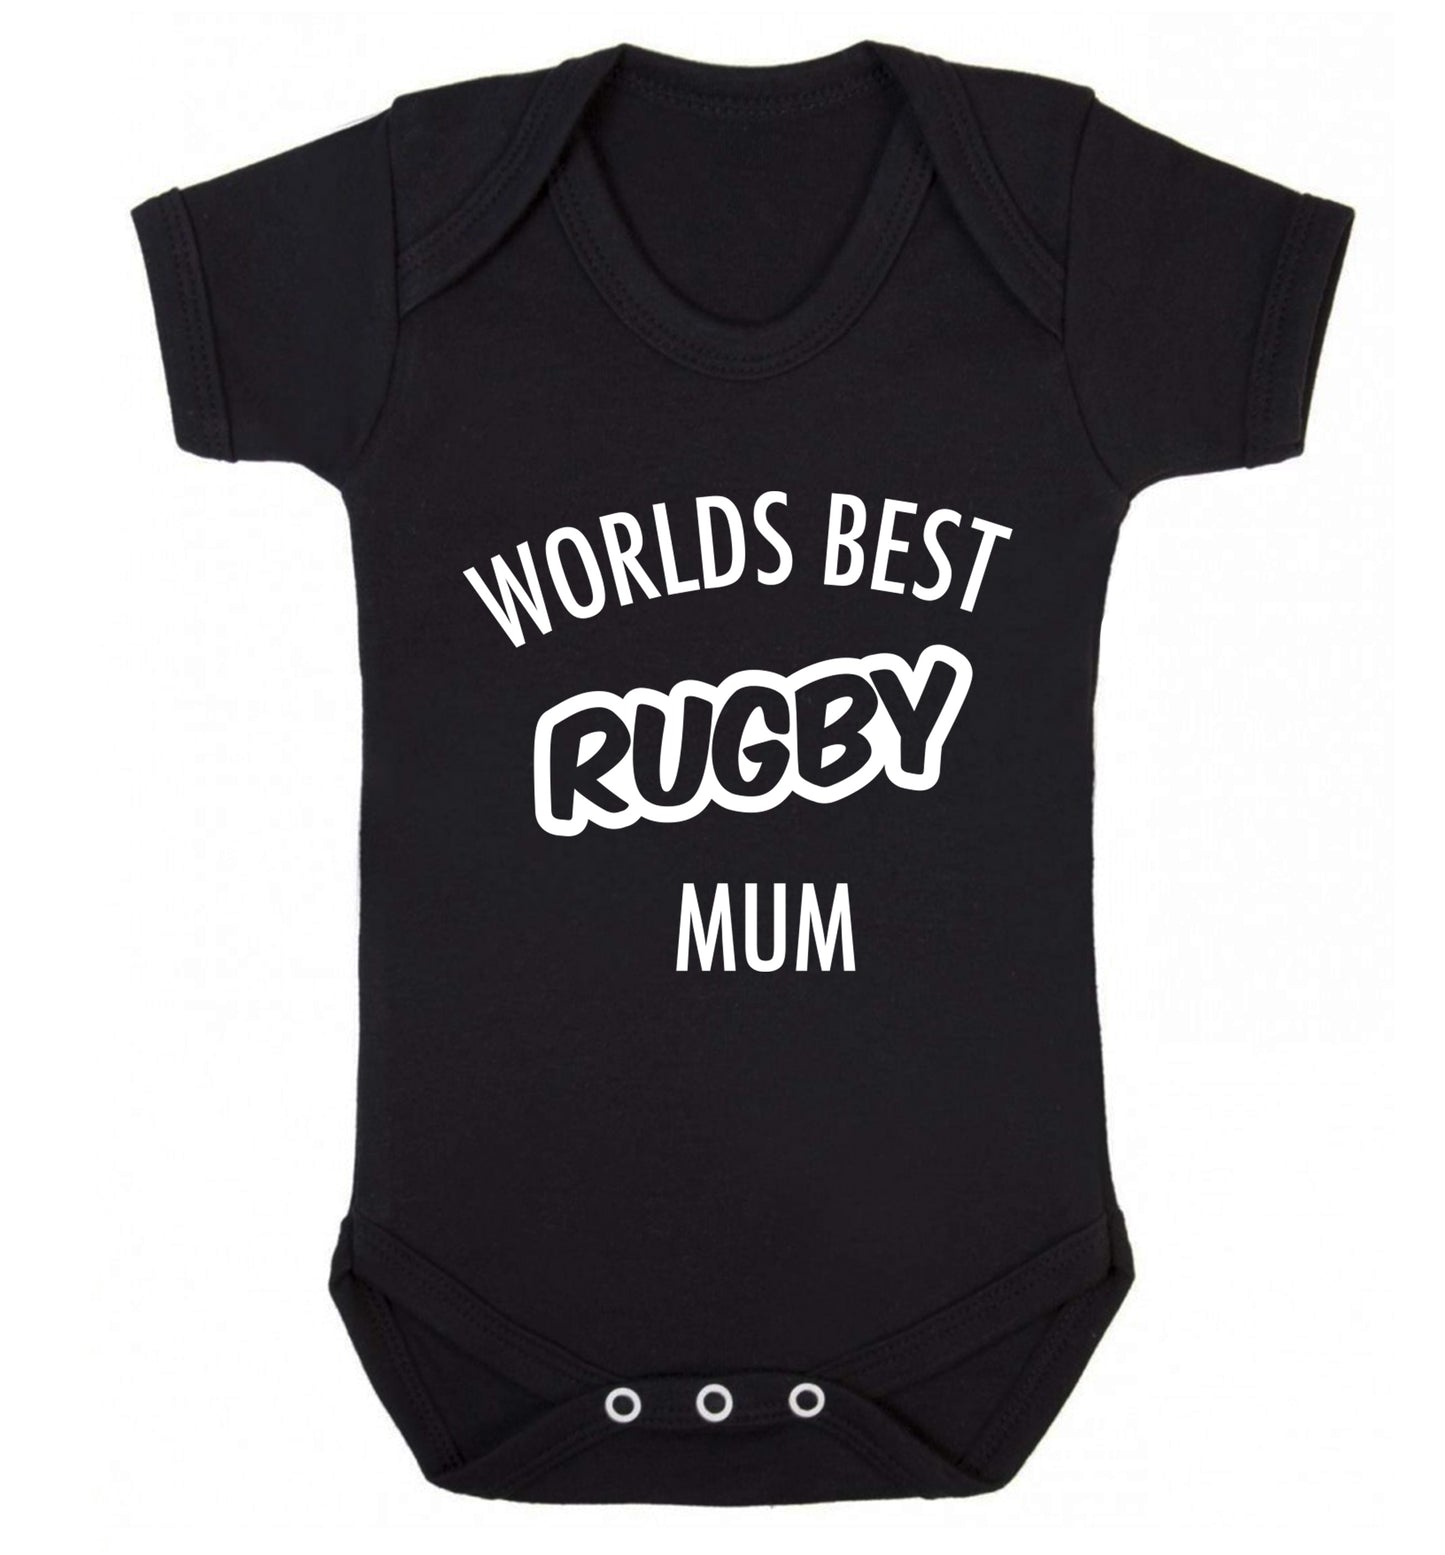 Worlds best rugby mum Baby Vest black 18-24 months